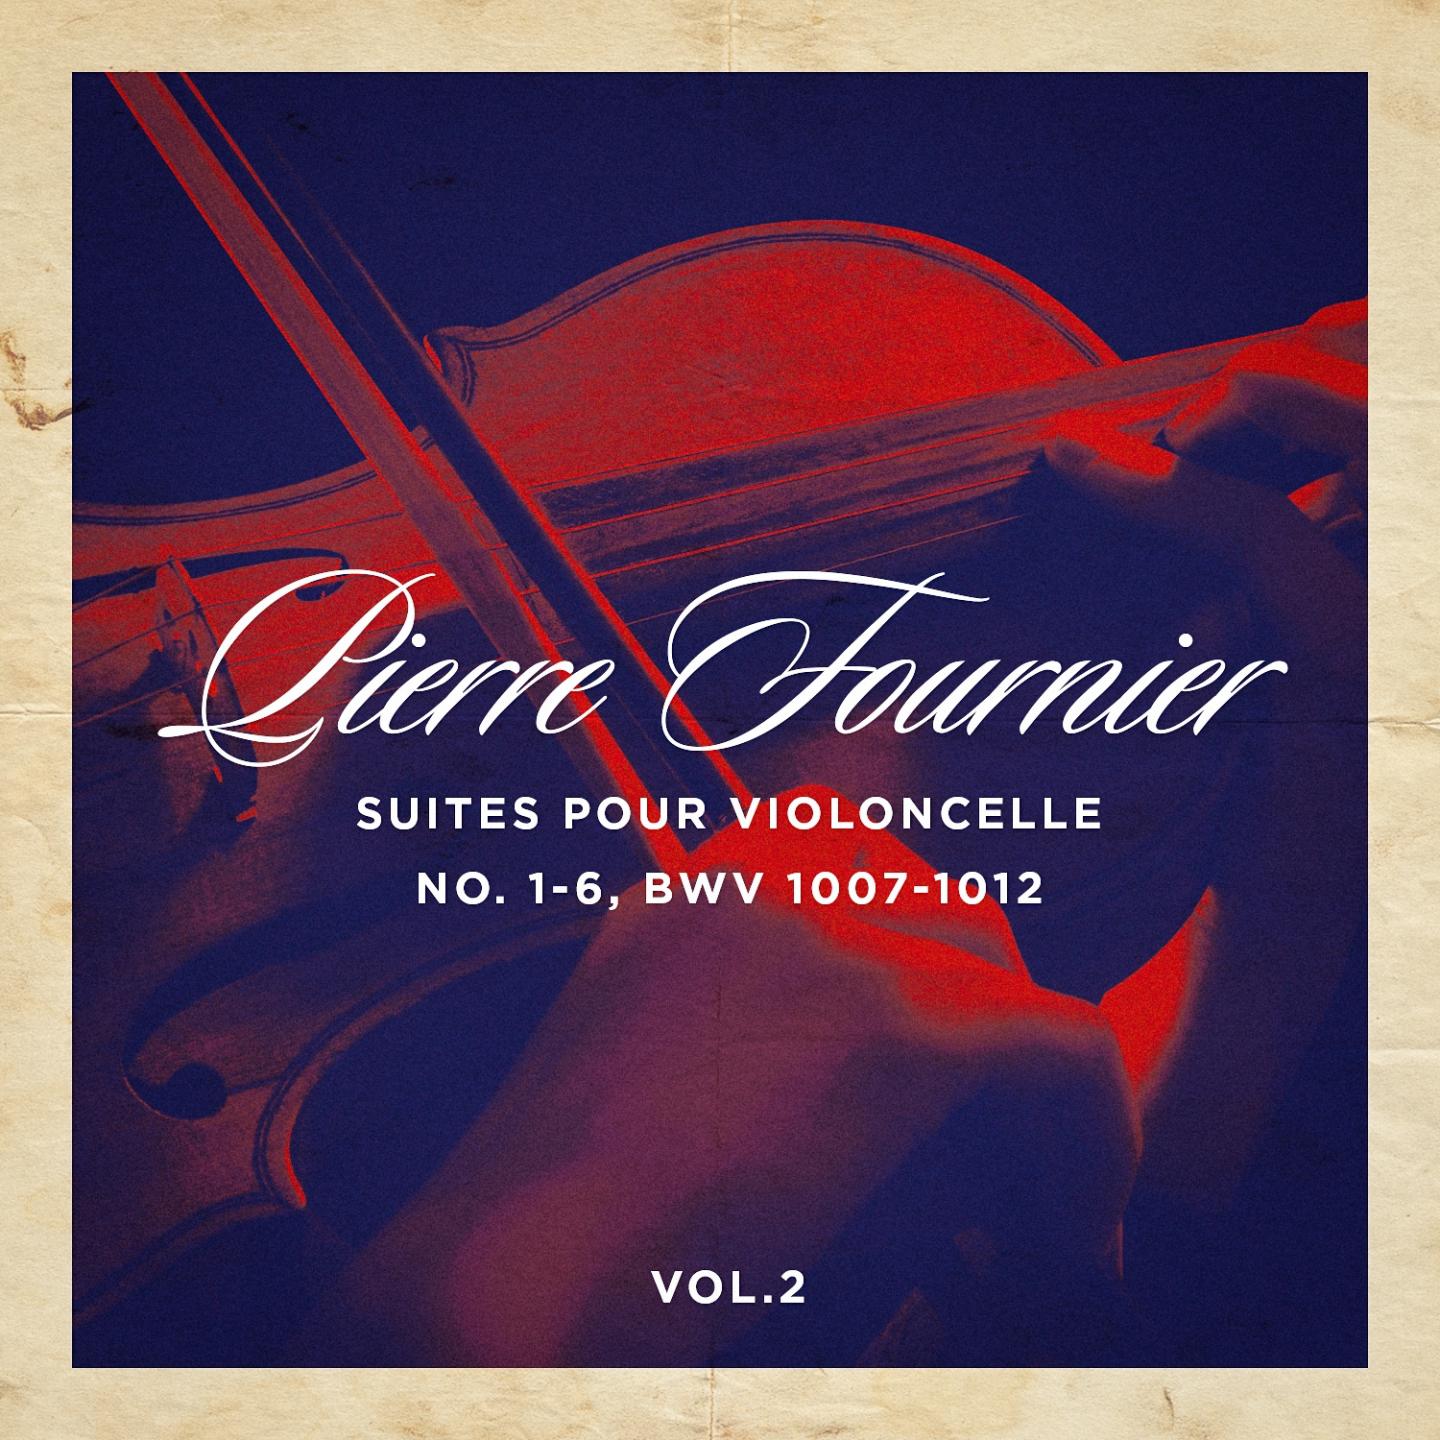 Suites pour violoncelle No. 1-6, BWV 1007-1012, Vol. 1